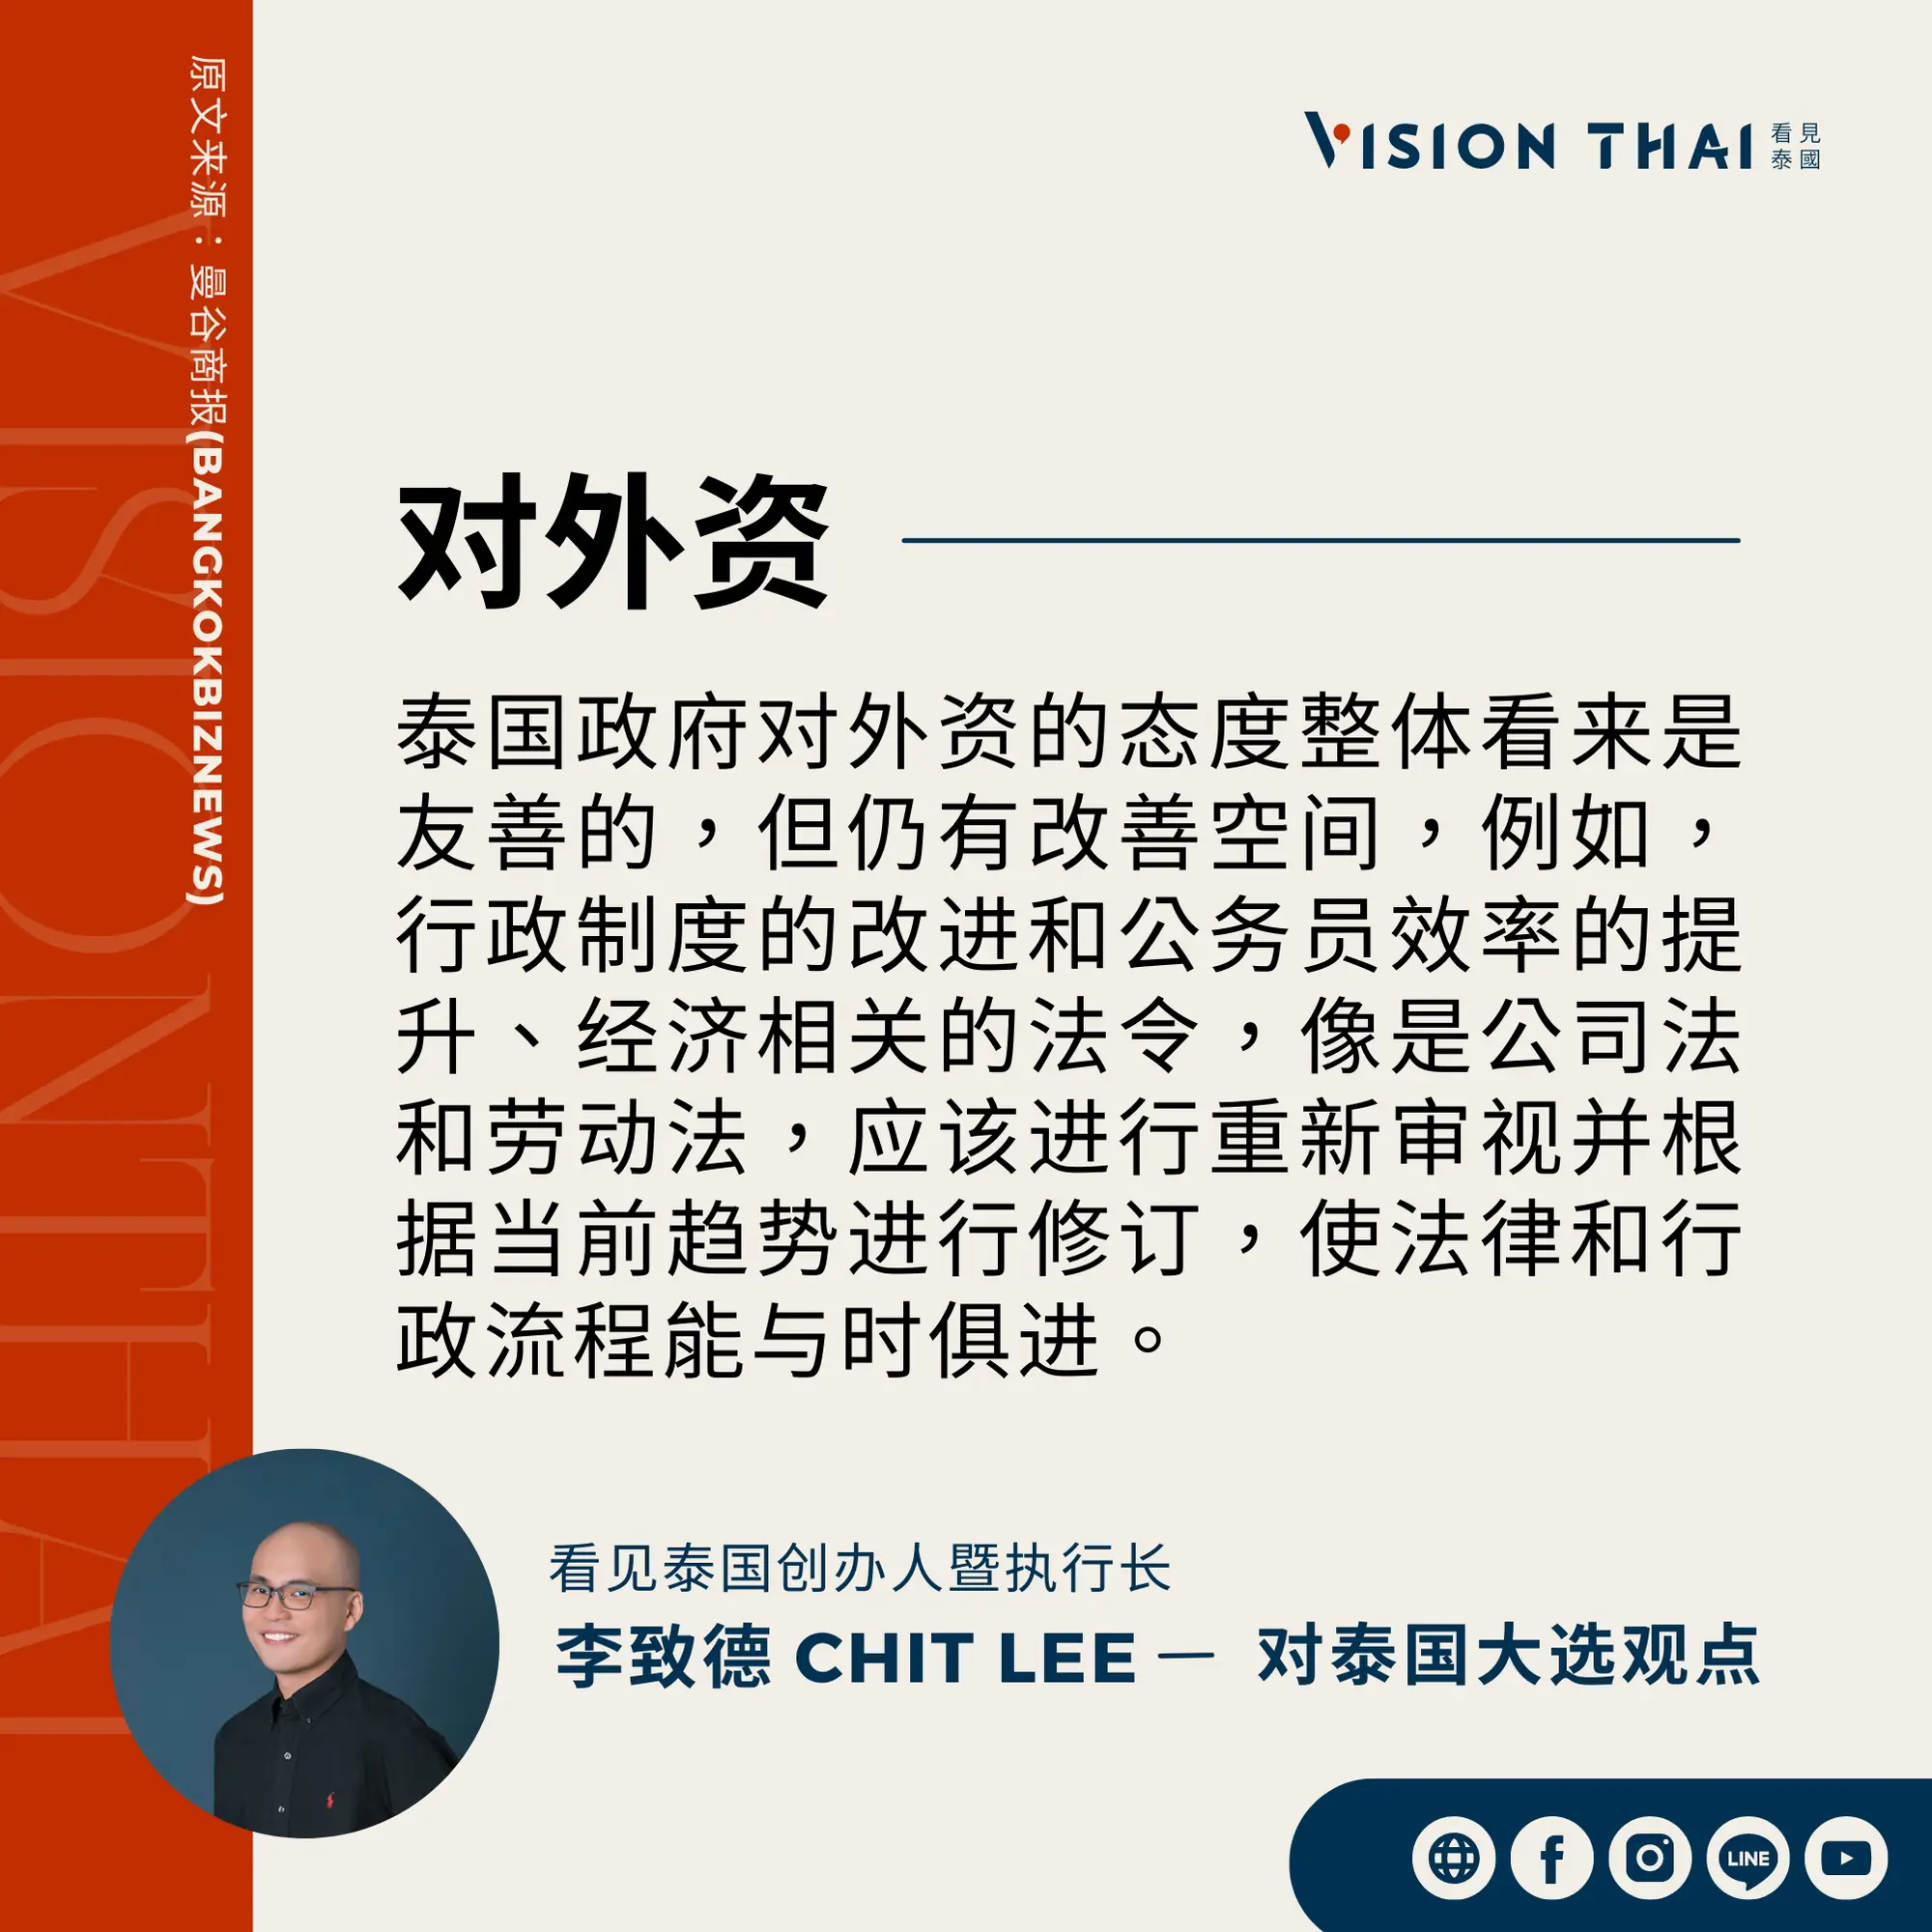 《曼谷商报》采访Vision Thai 看见泰国媒体创办人暨执行长李致德(Chit Lee)对外资的期许（来源：看见泰国制图）